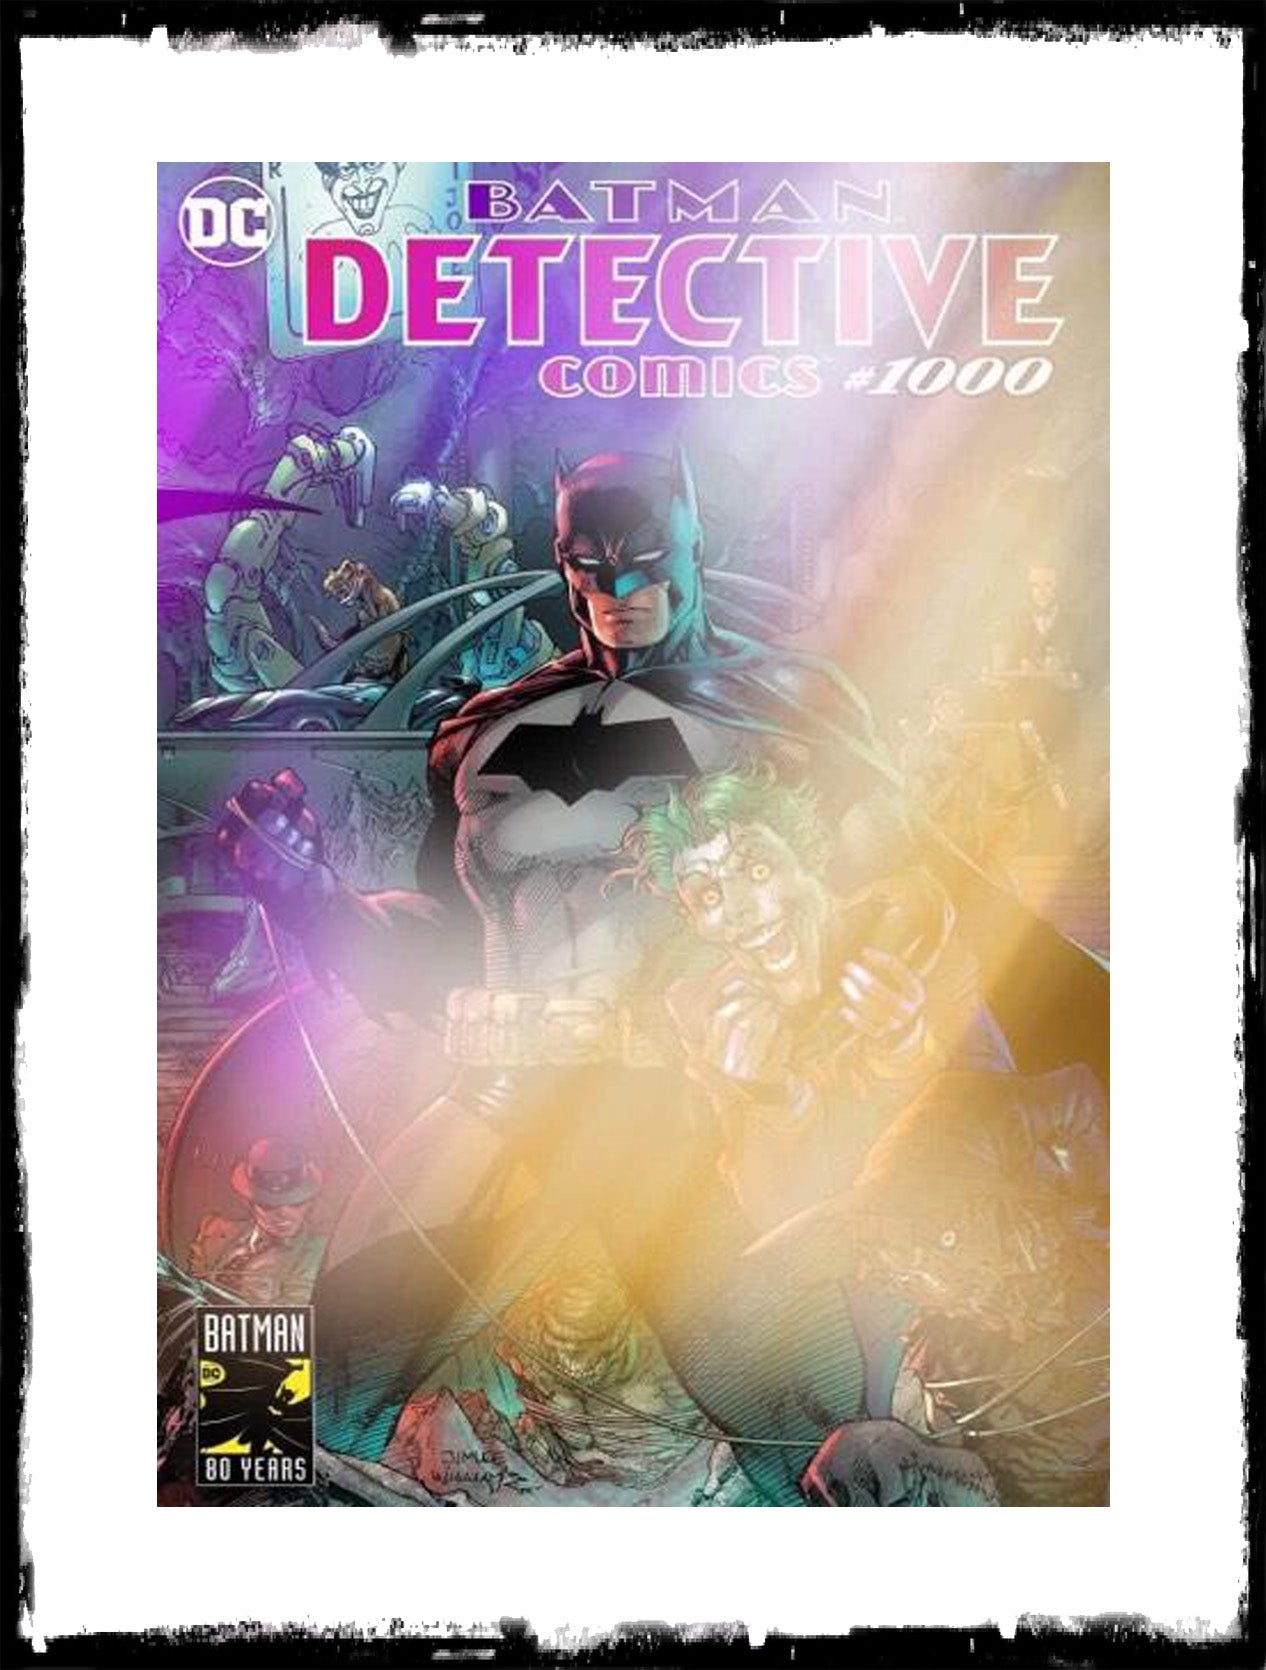 DETECTIVE COMICS - #1000 JIM LEE WONDERCON EXCLUSIVE FOIL VARIANT (2019 - NM)